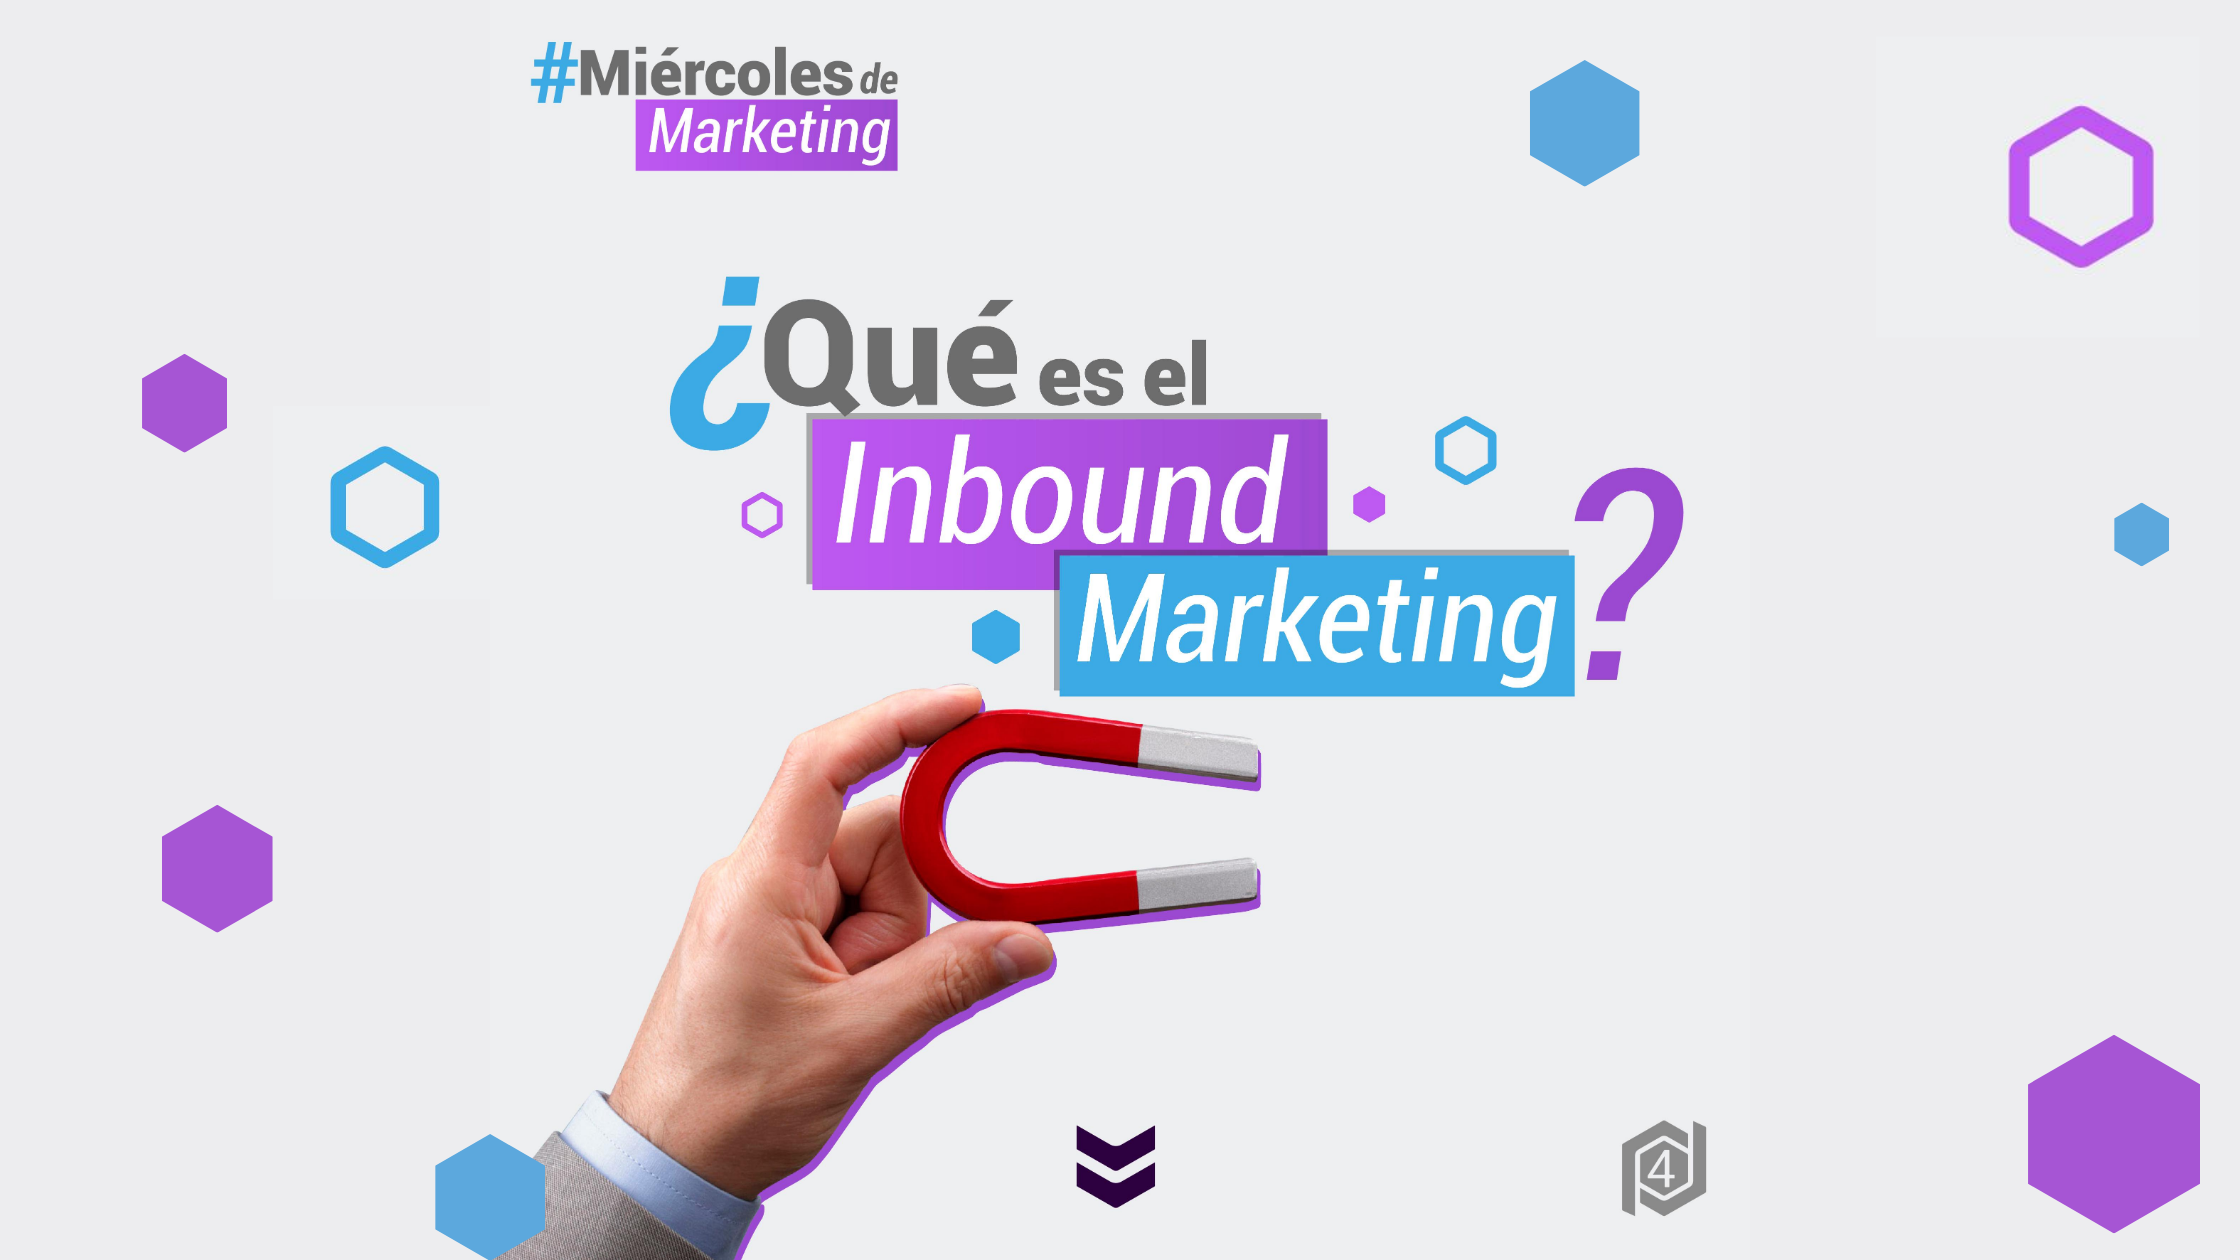 ¿Qué es el Inbound Marketing?